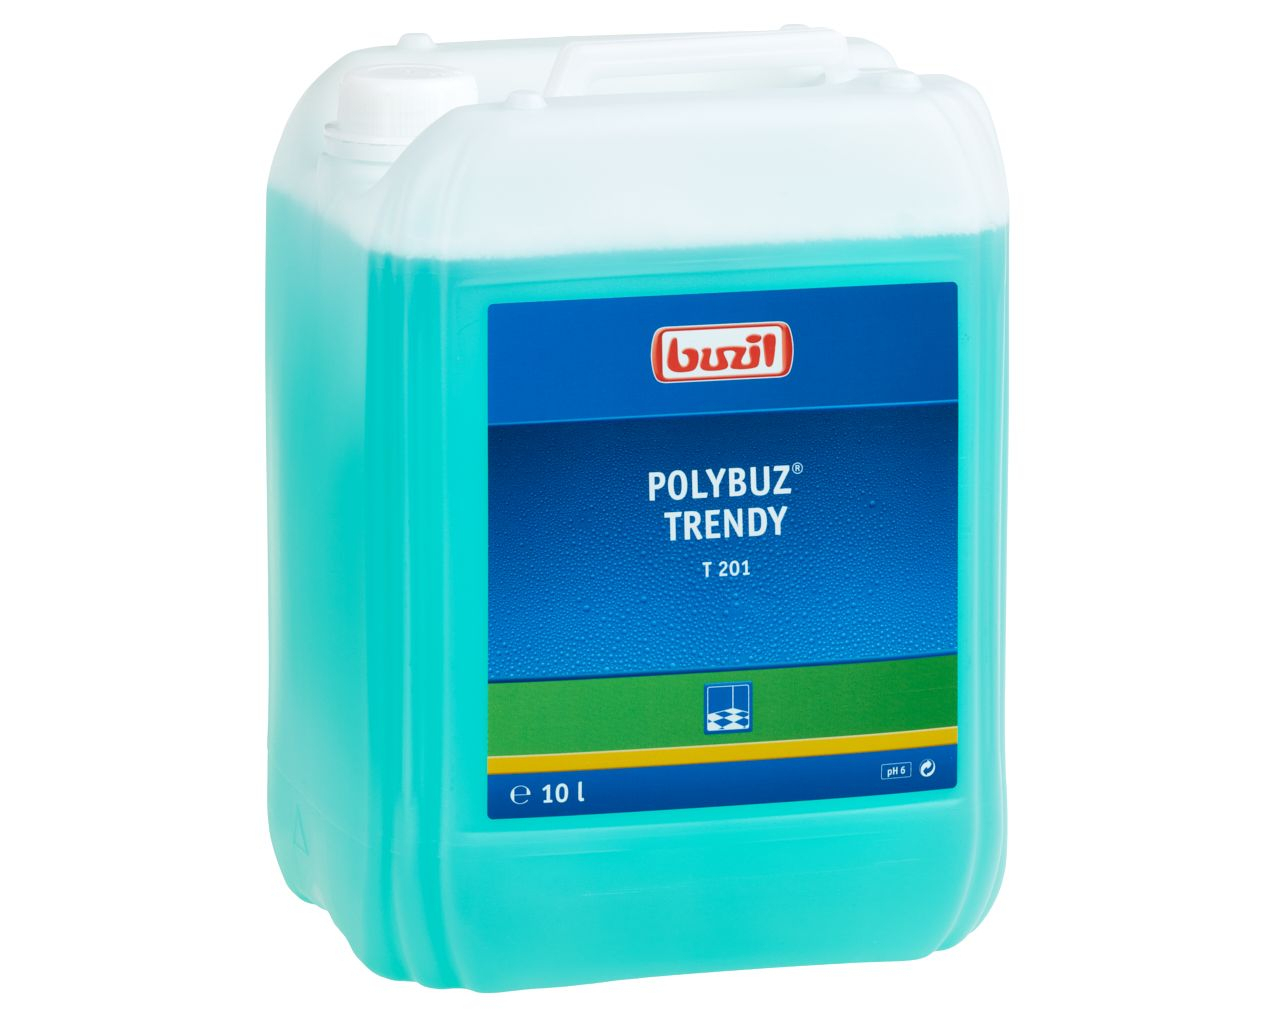 T201 Polybuz Trendy - Środek nadający połysk do podłóg wodoodpornych, kanister 10 l